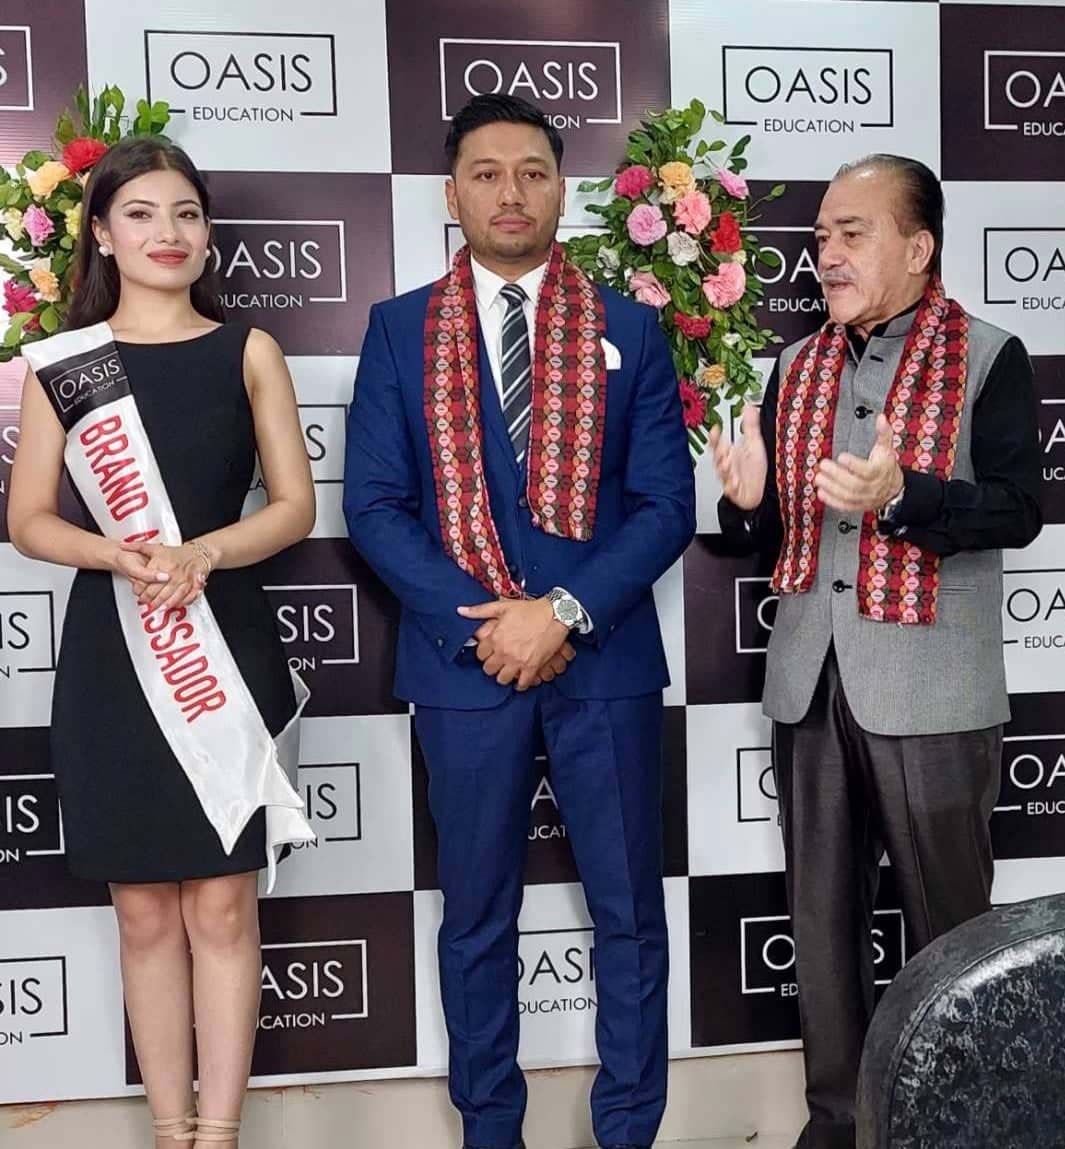 Priyanka Rani Joshi as the Brand Ambassador of Oasis Education